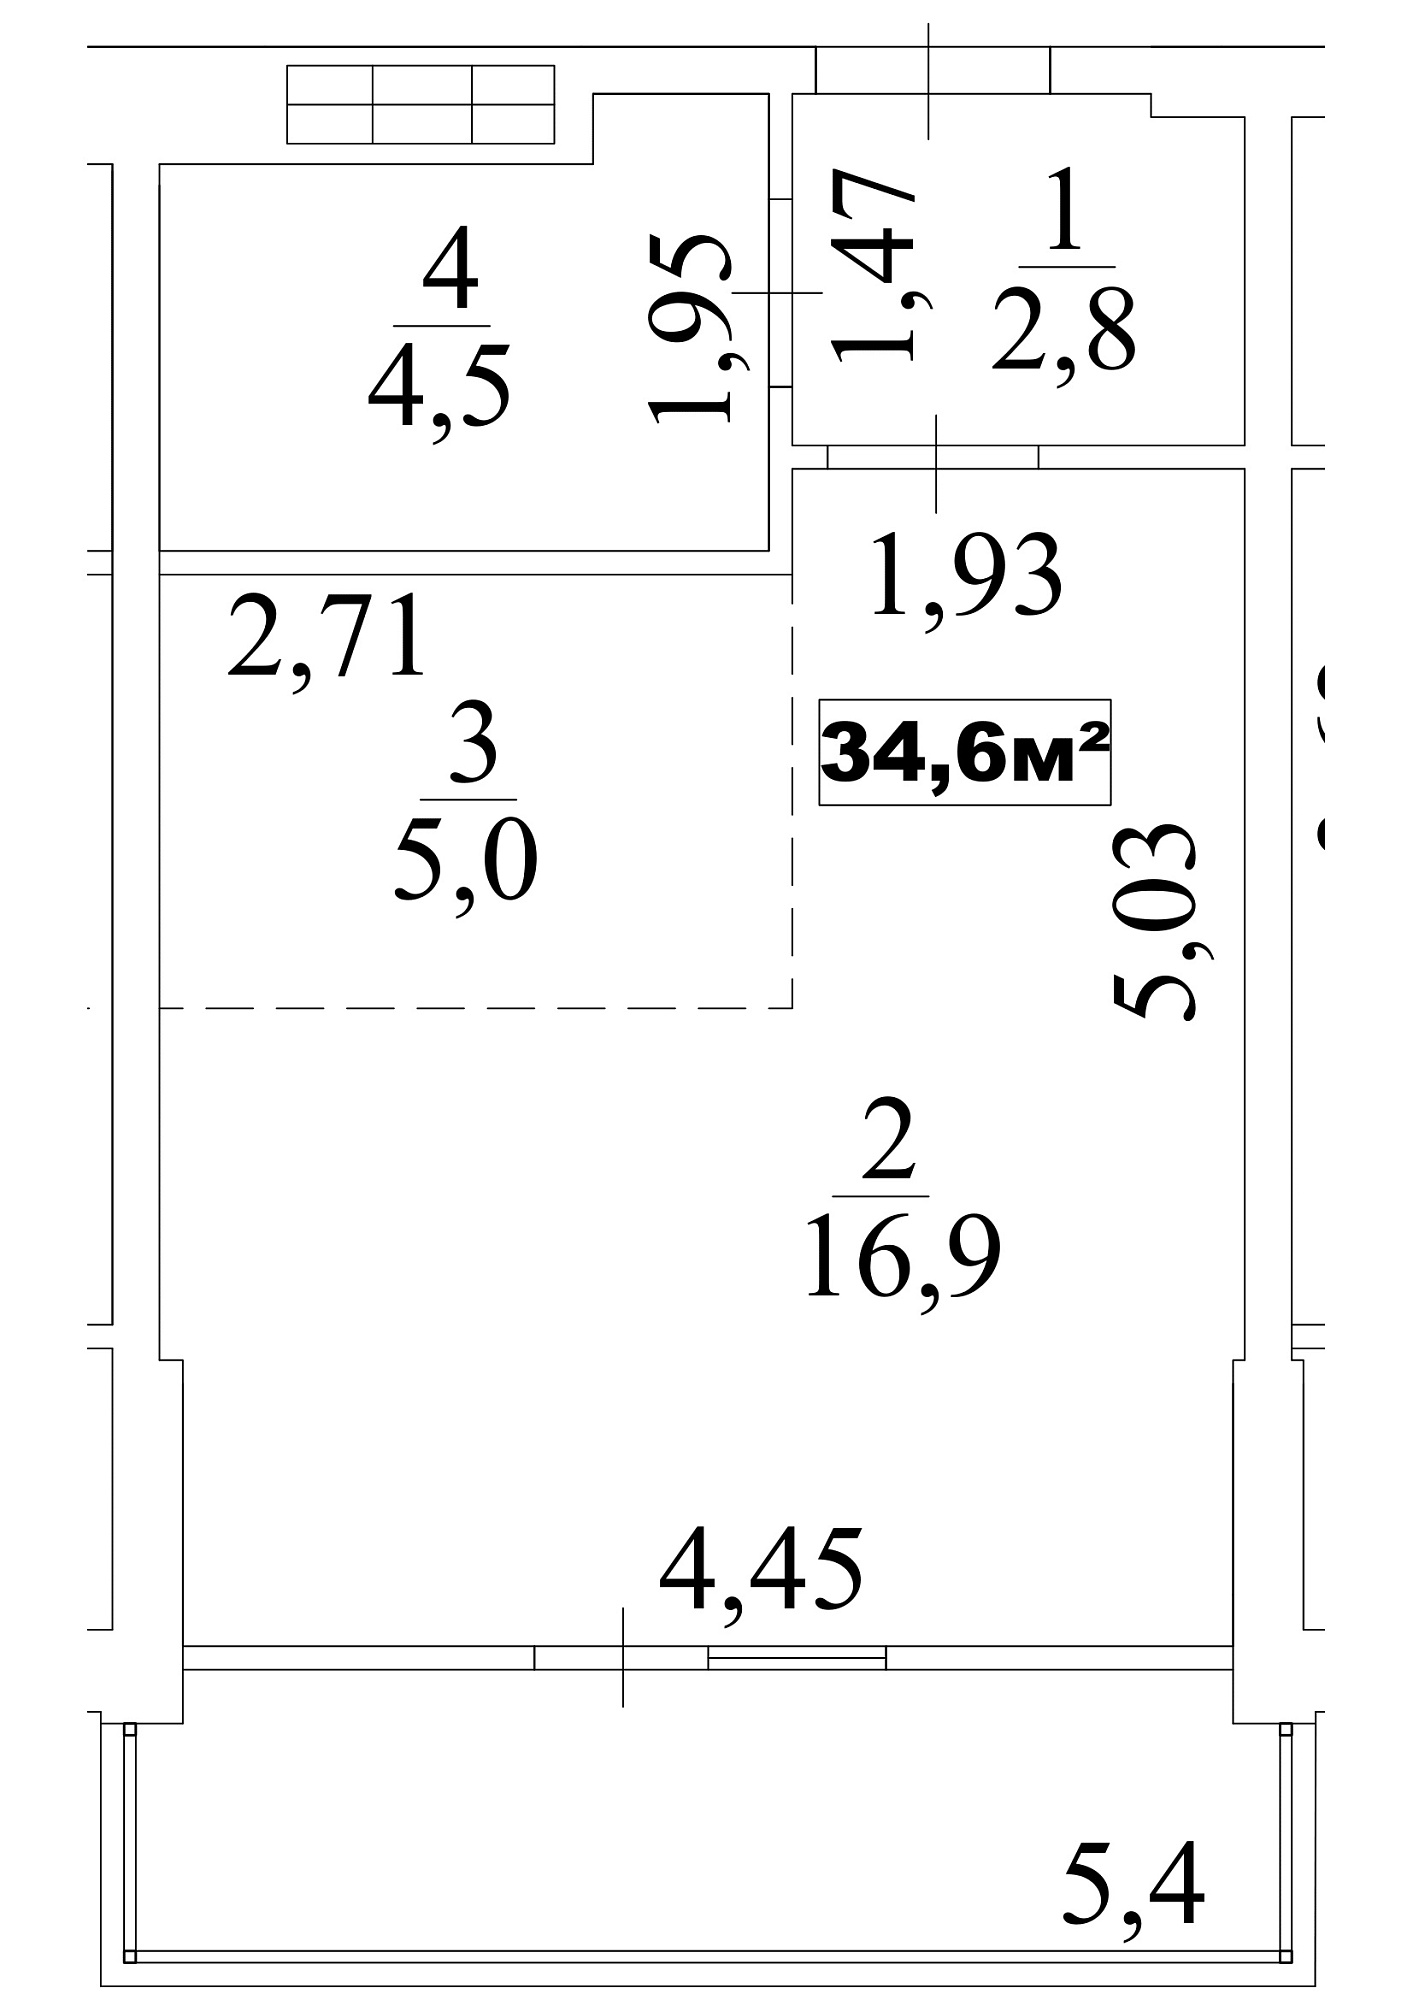 Планування Smart-квартира площею 34.6м2, AB-10-01/0001б.